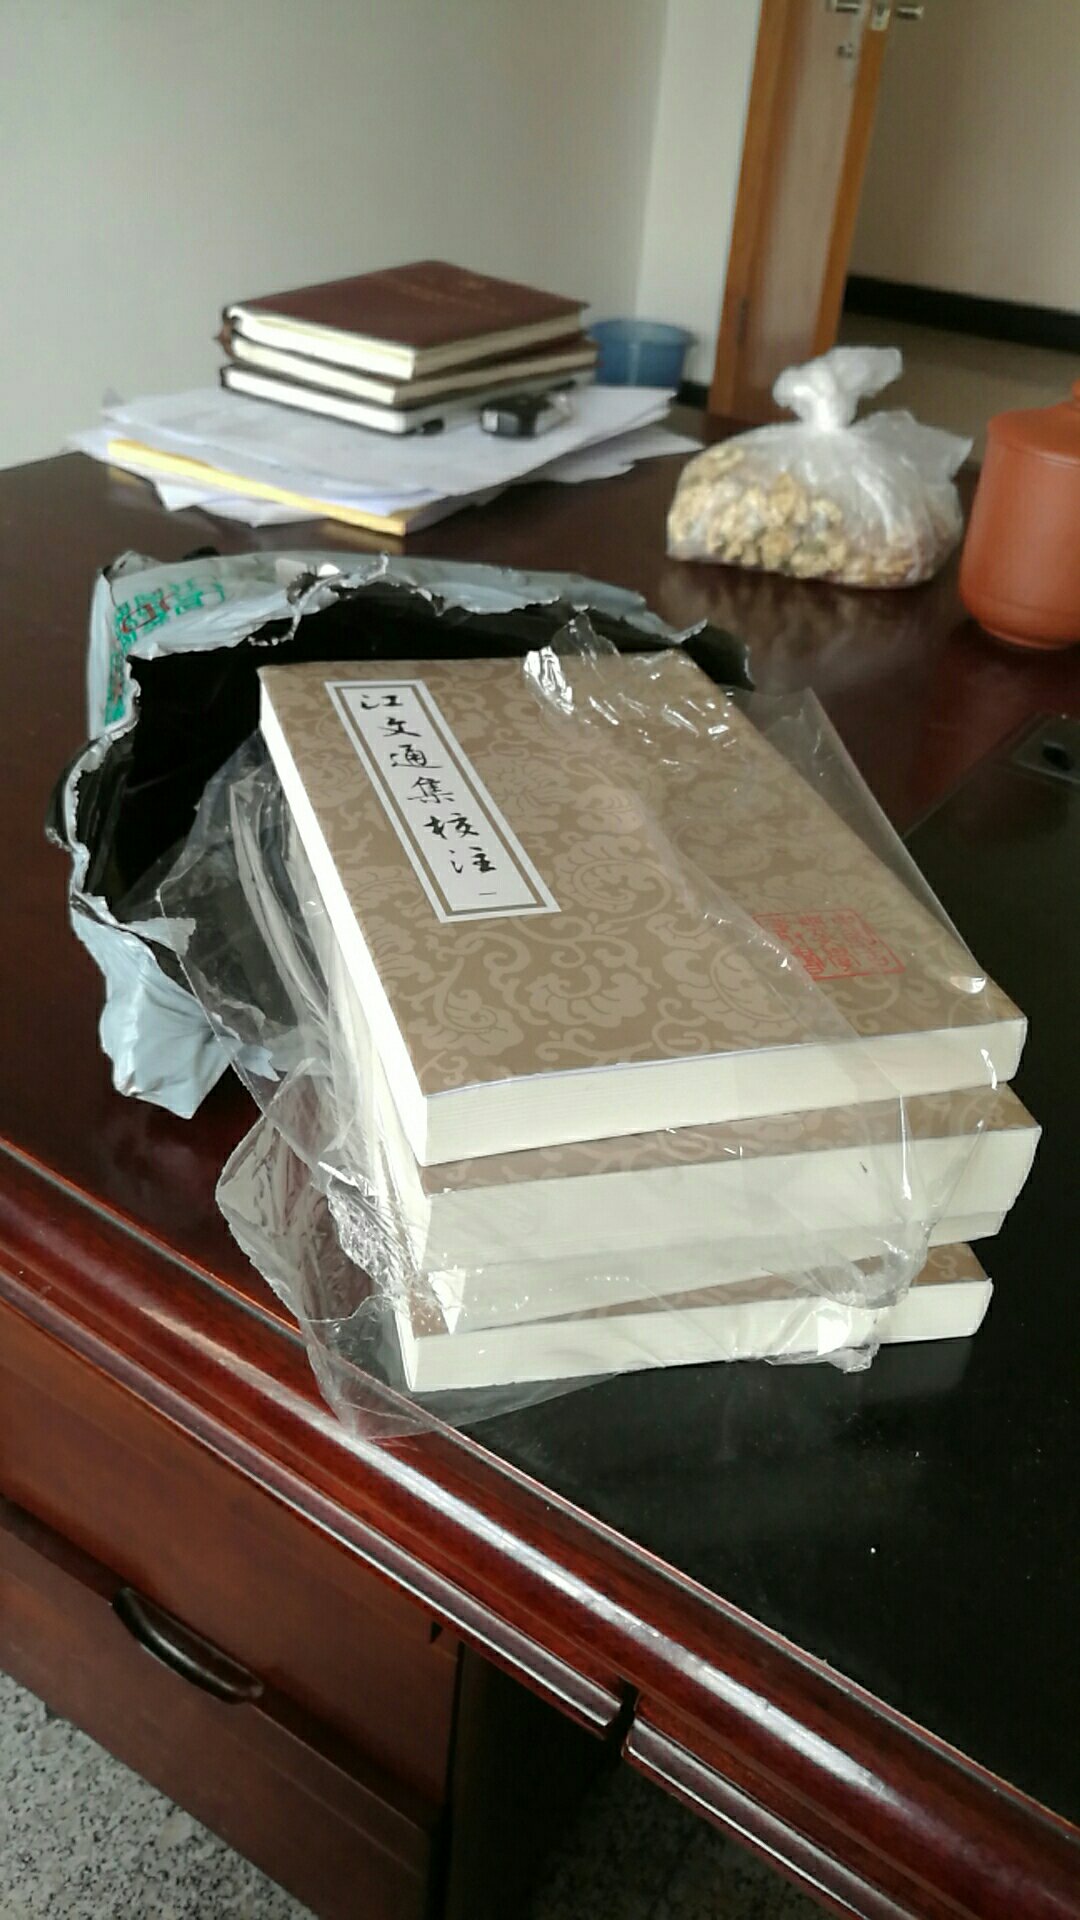 书是好书 包装太差 一层塑料袋就打发了 幸运的是书没损坏 但您好歹装个纸盒啊